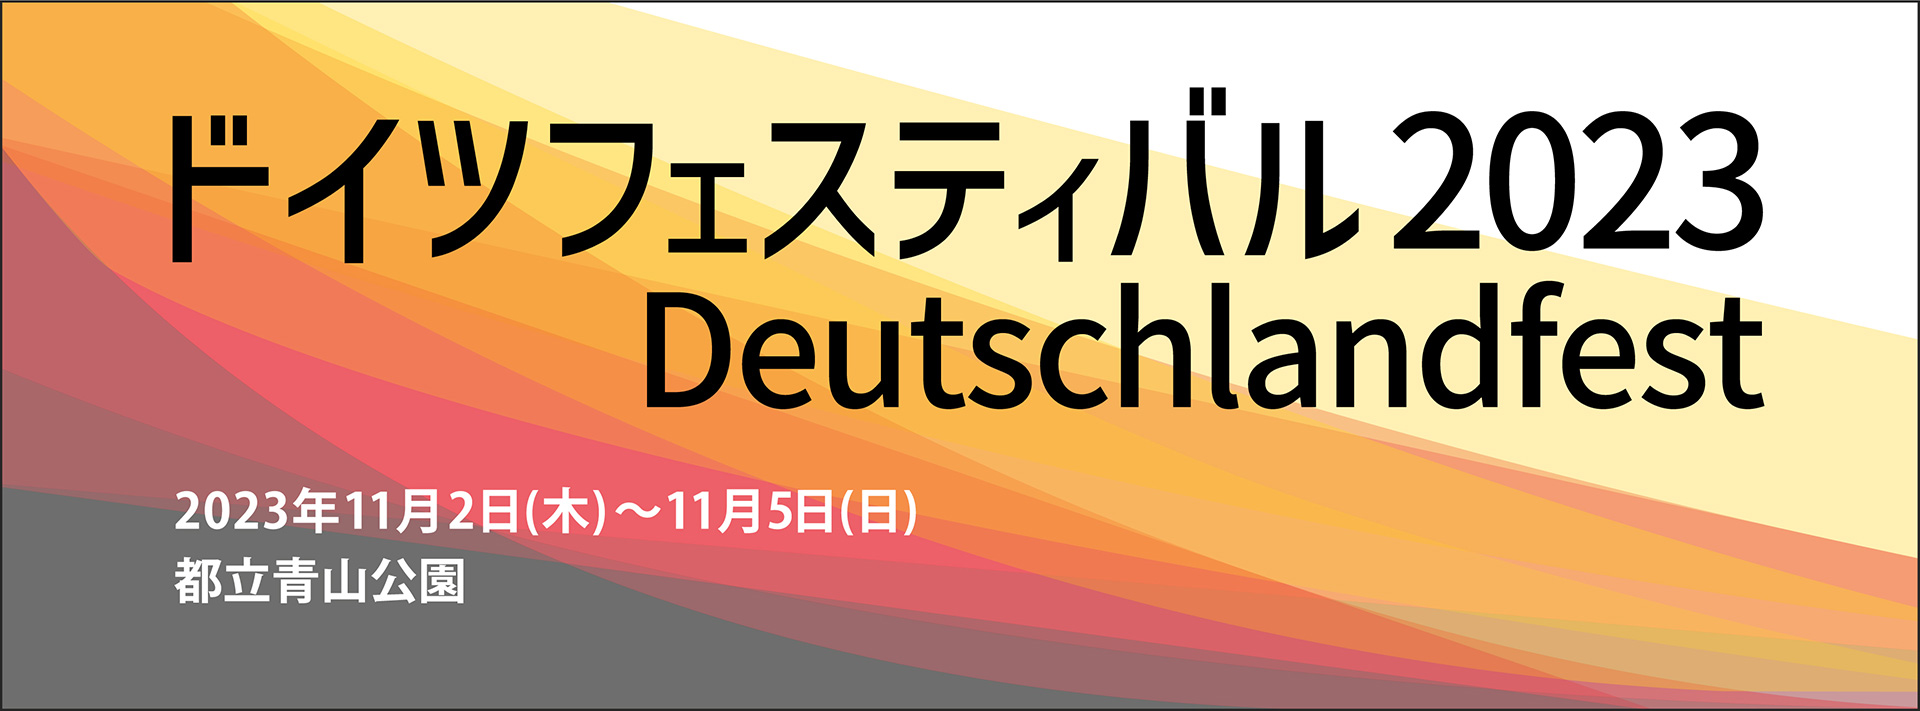 ドイツフェスティバル2023 Deutschlandfest 2023年11月2日（木）〜11月5日（日）都立青山公園